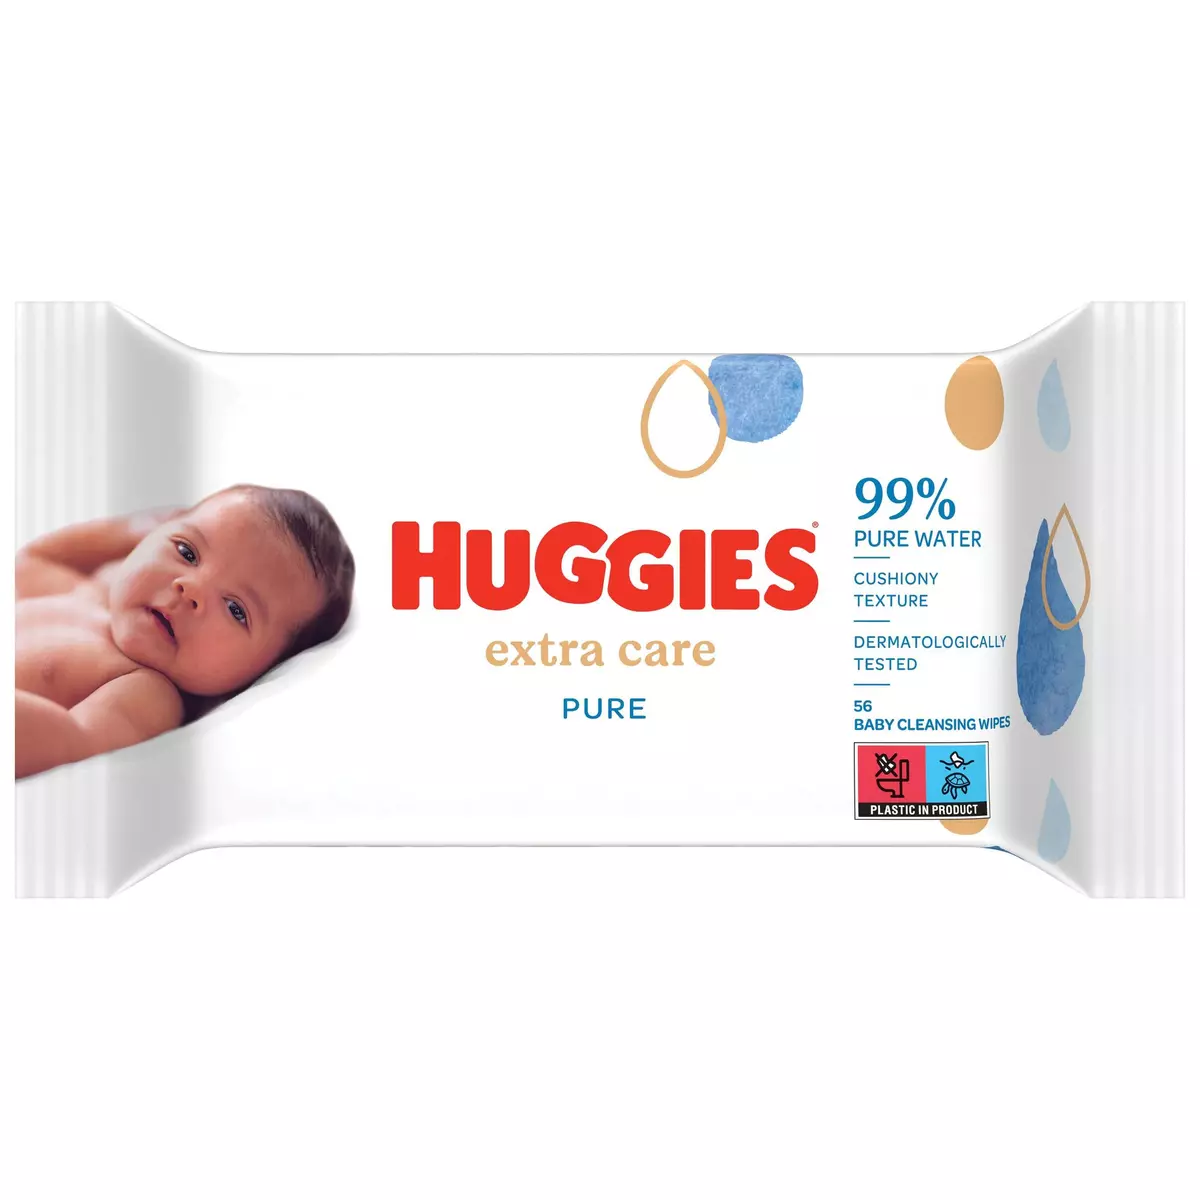 HUGGIES Lingettes pure extra care pour bébé 56 lingettes